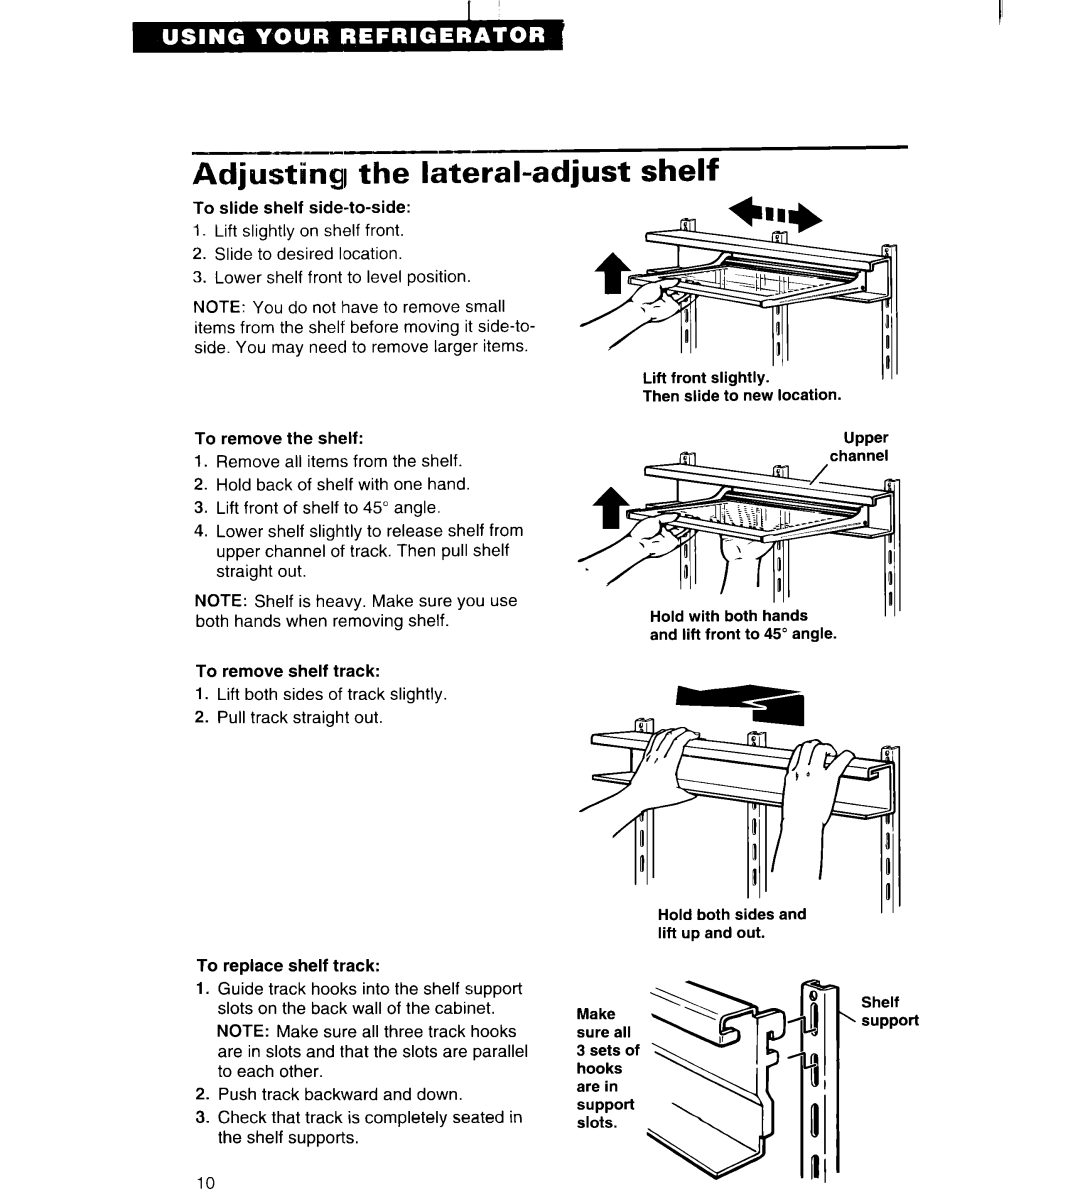 Whirlpool ET25DK important safety instructions Adjusti& the la%ral-adjustshelf, Upper 